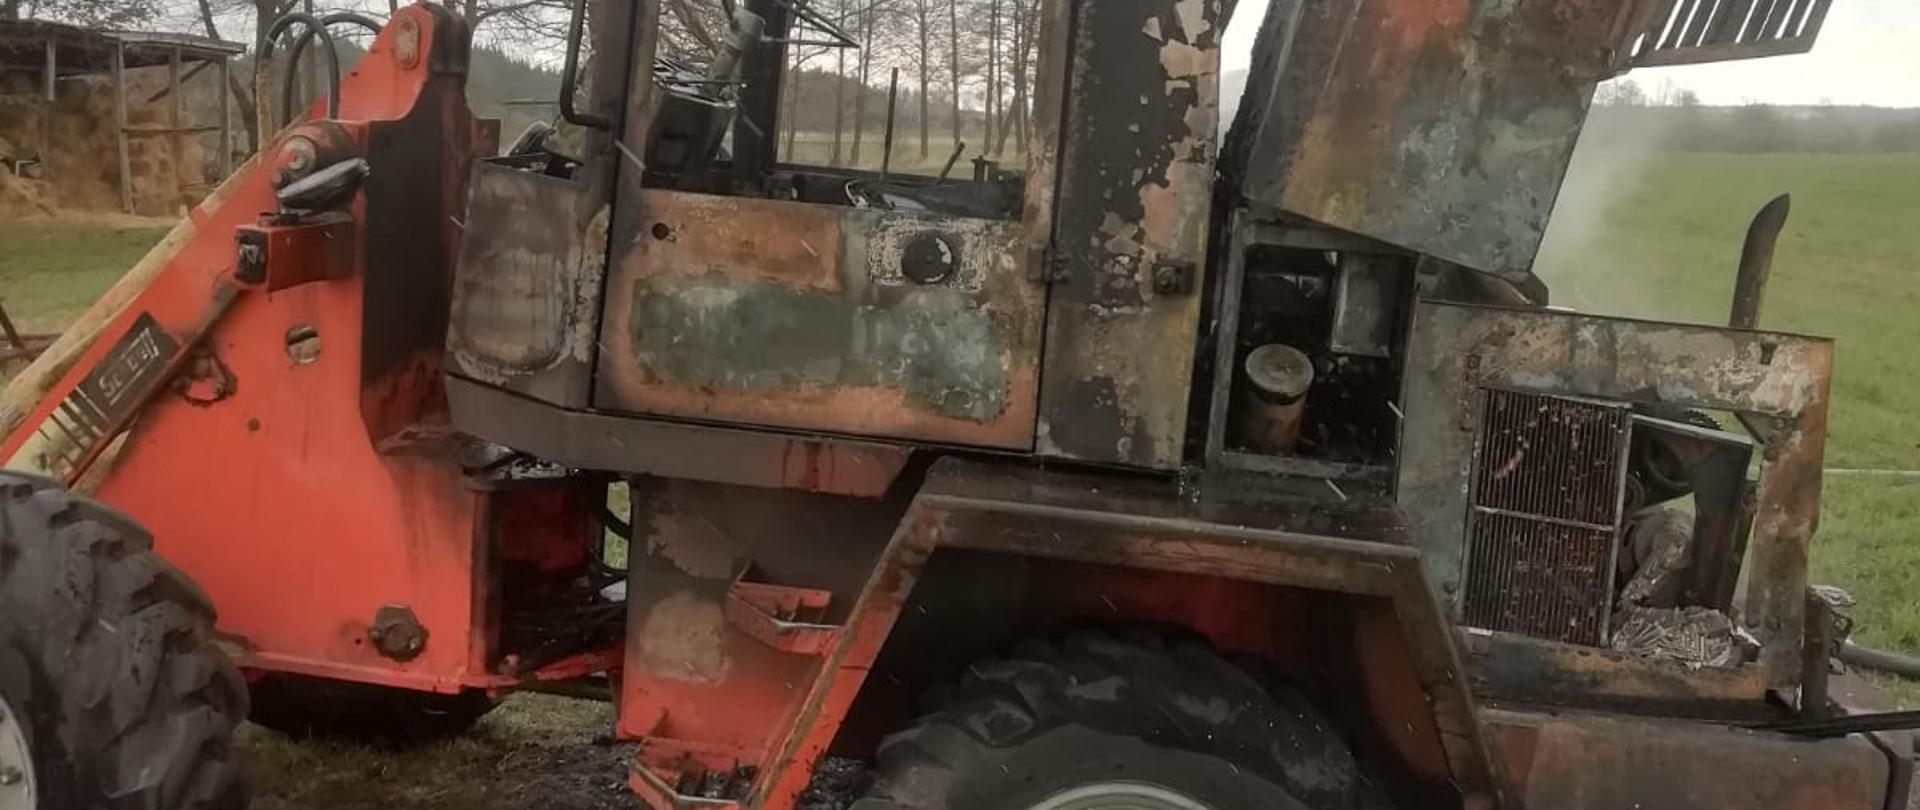 Na zdjęciu ładowarka po pożarze. Spaleniu uległa komora silnika oraz kabina. Zdjęcie wykonane z lewego boku pojazdu, który znajdował się na jezdni. W tle łąka i drzewa.